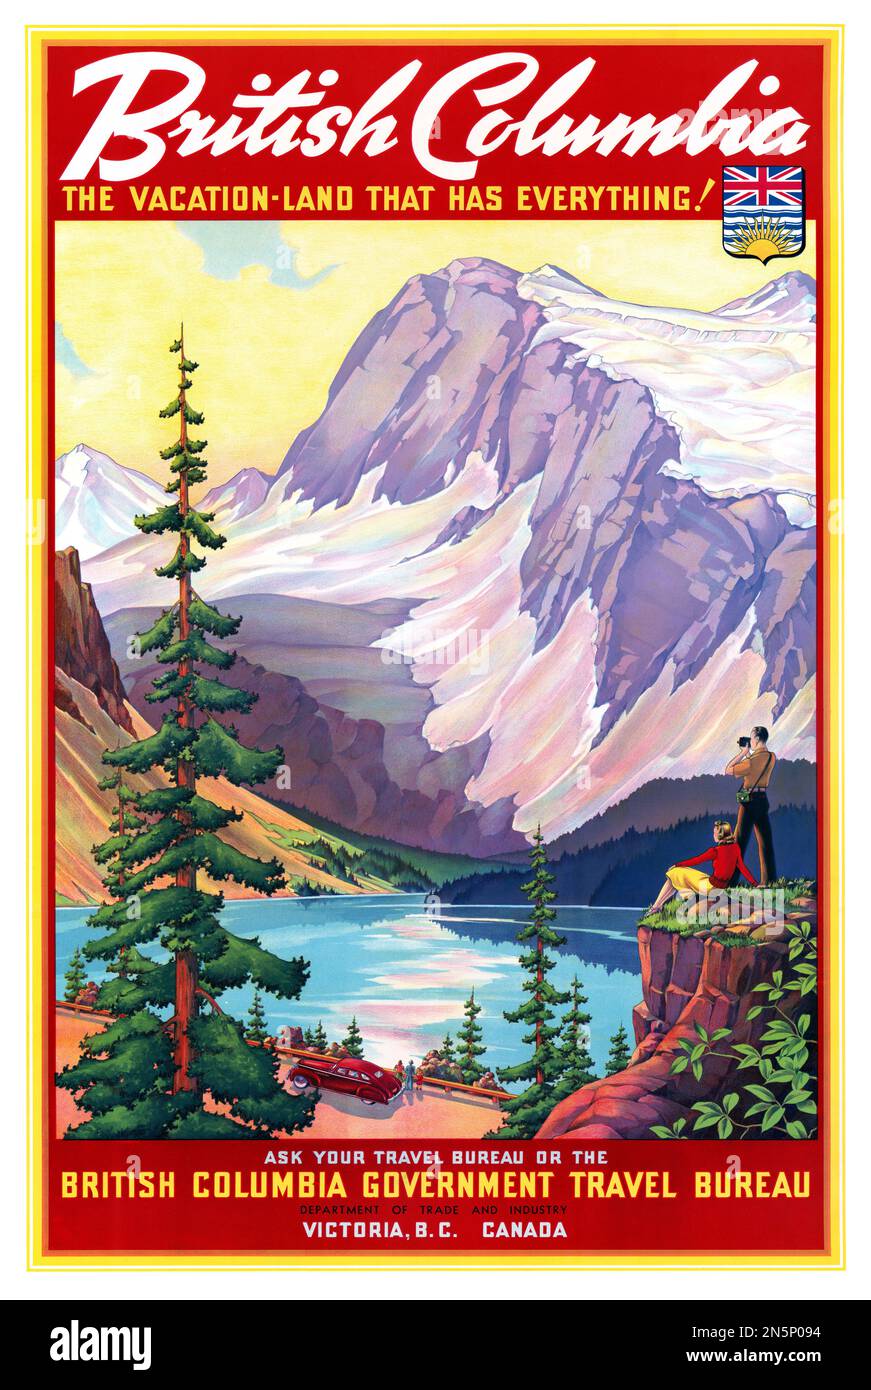 British Columbia, das Urlaubsland, das alles hat! Künstler unbekannt. Poster veröffentlicht ca. 1950 in Kanada. Stockfoto